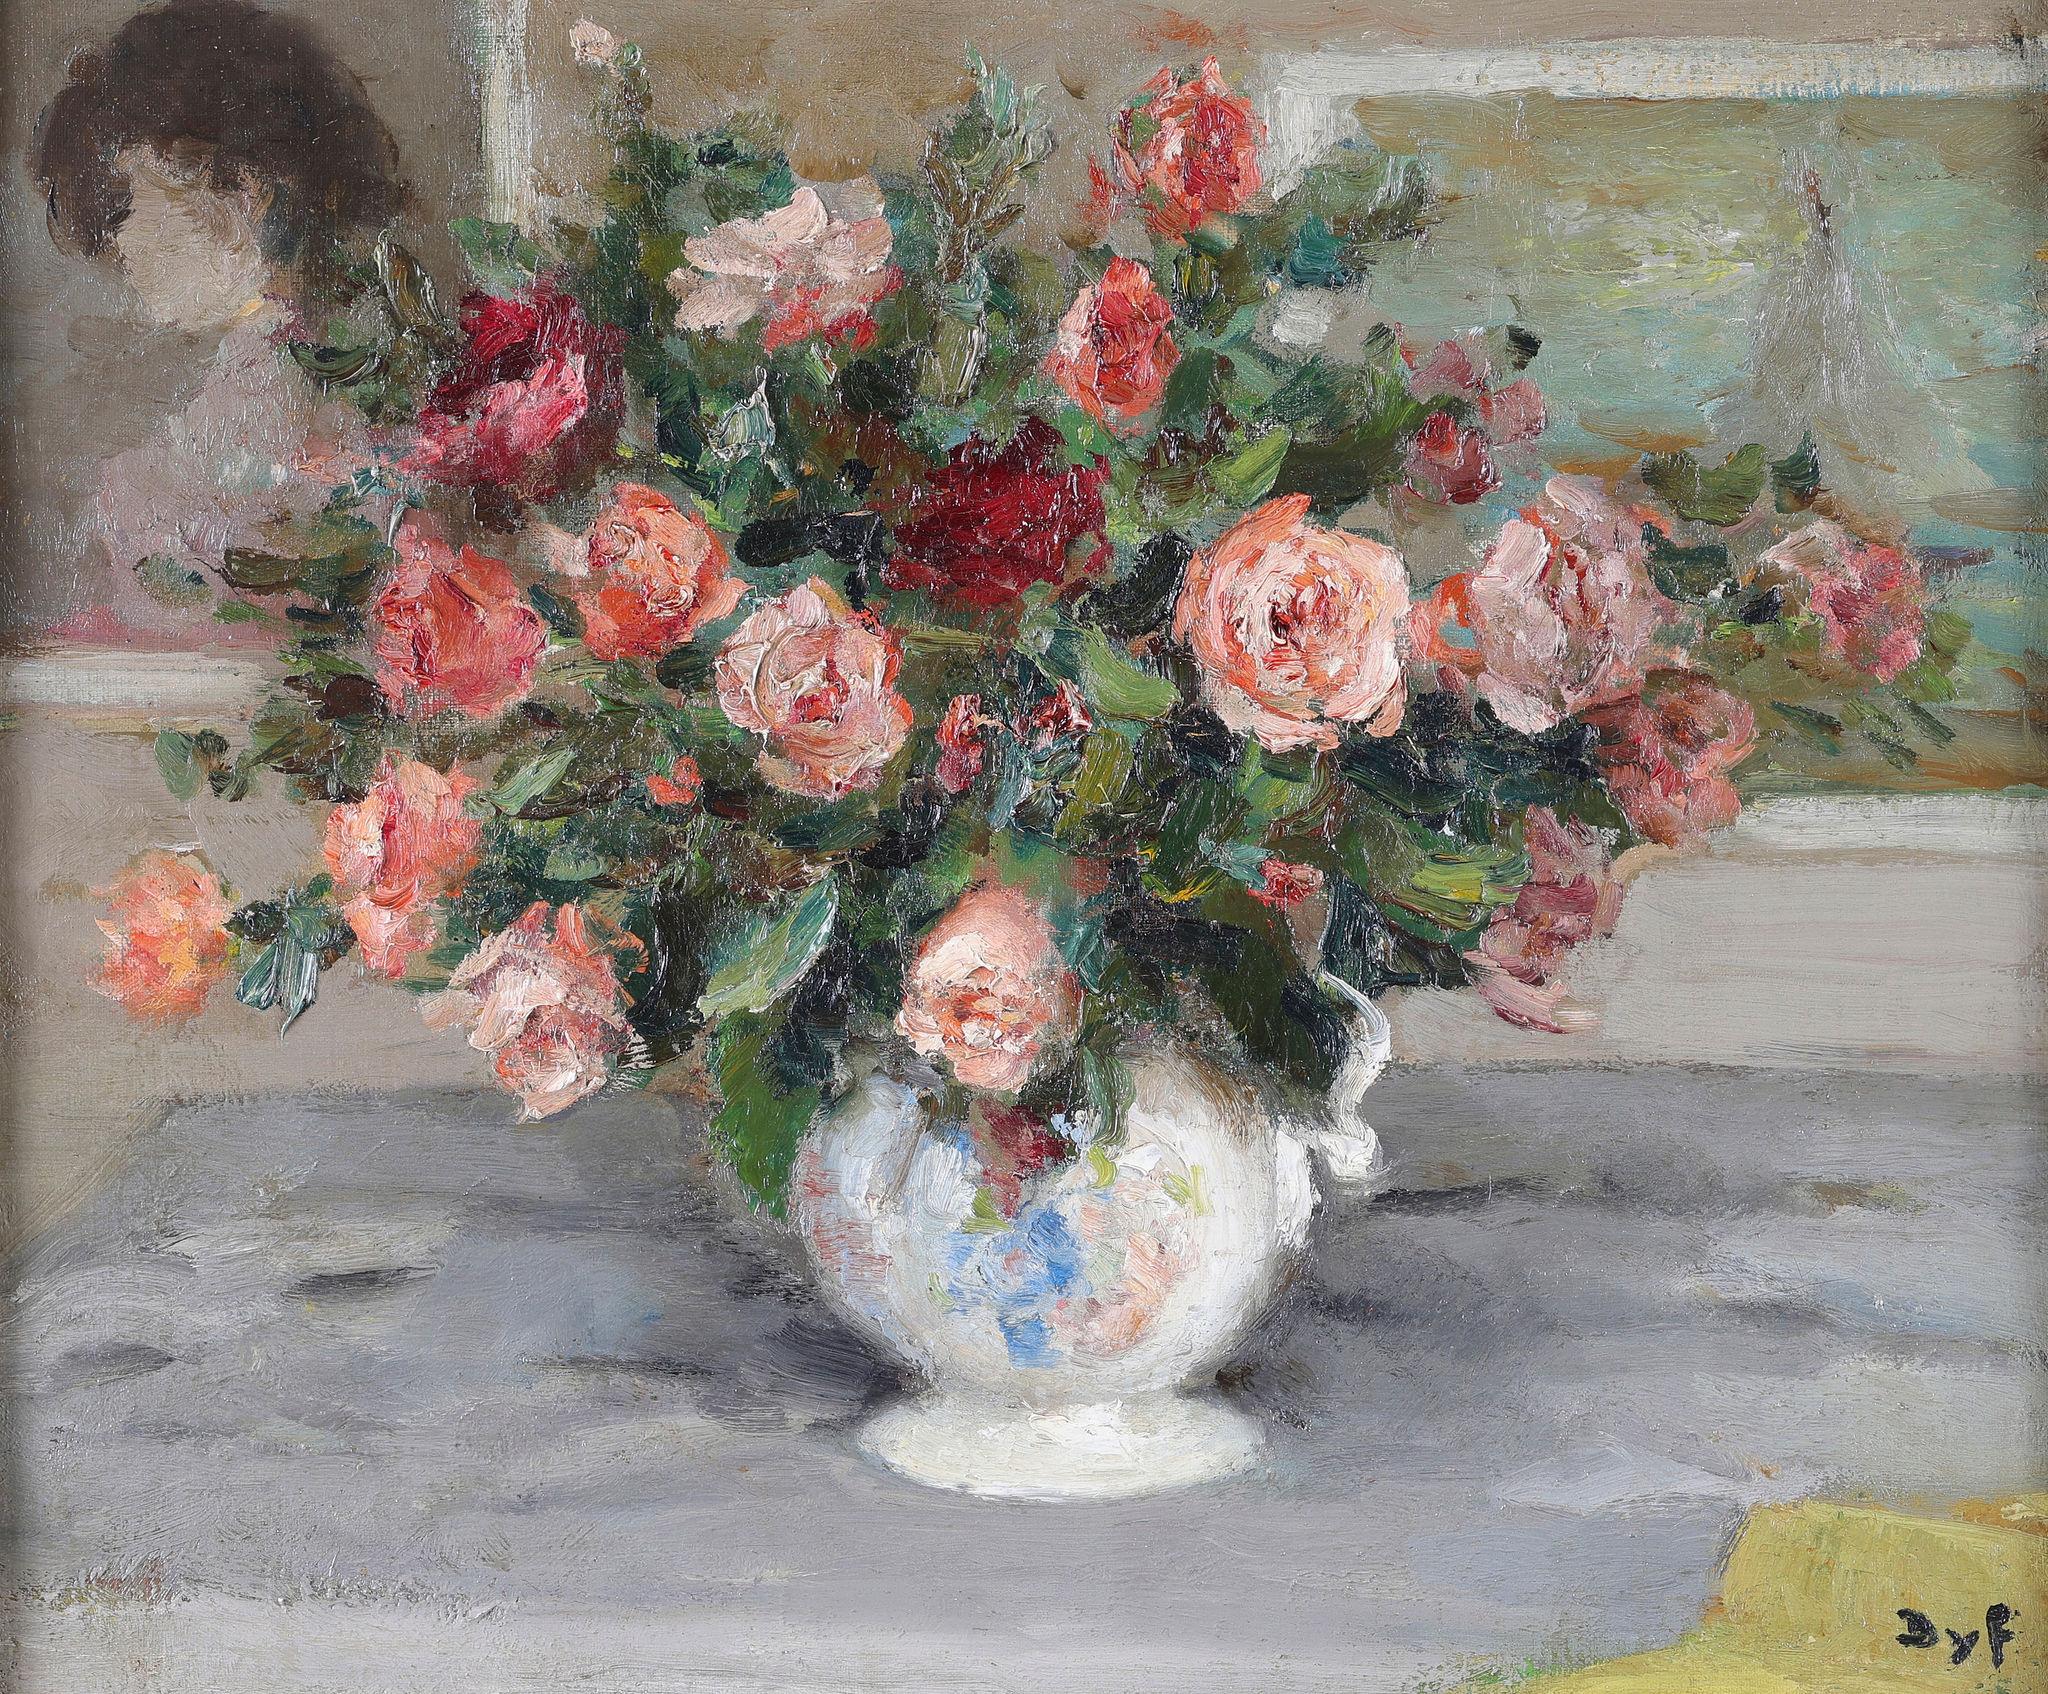 Nature morte de roses dans un vase en céramique. Une huile sur toile - Painting de Marcel Dyf